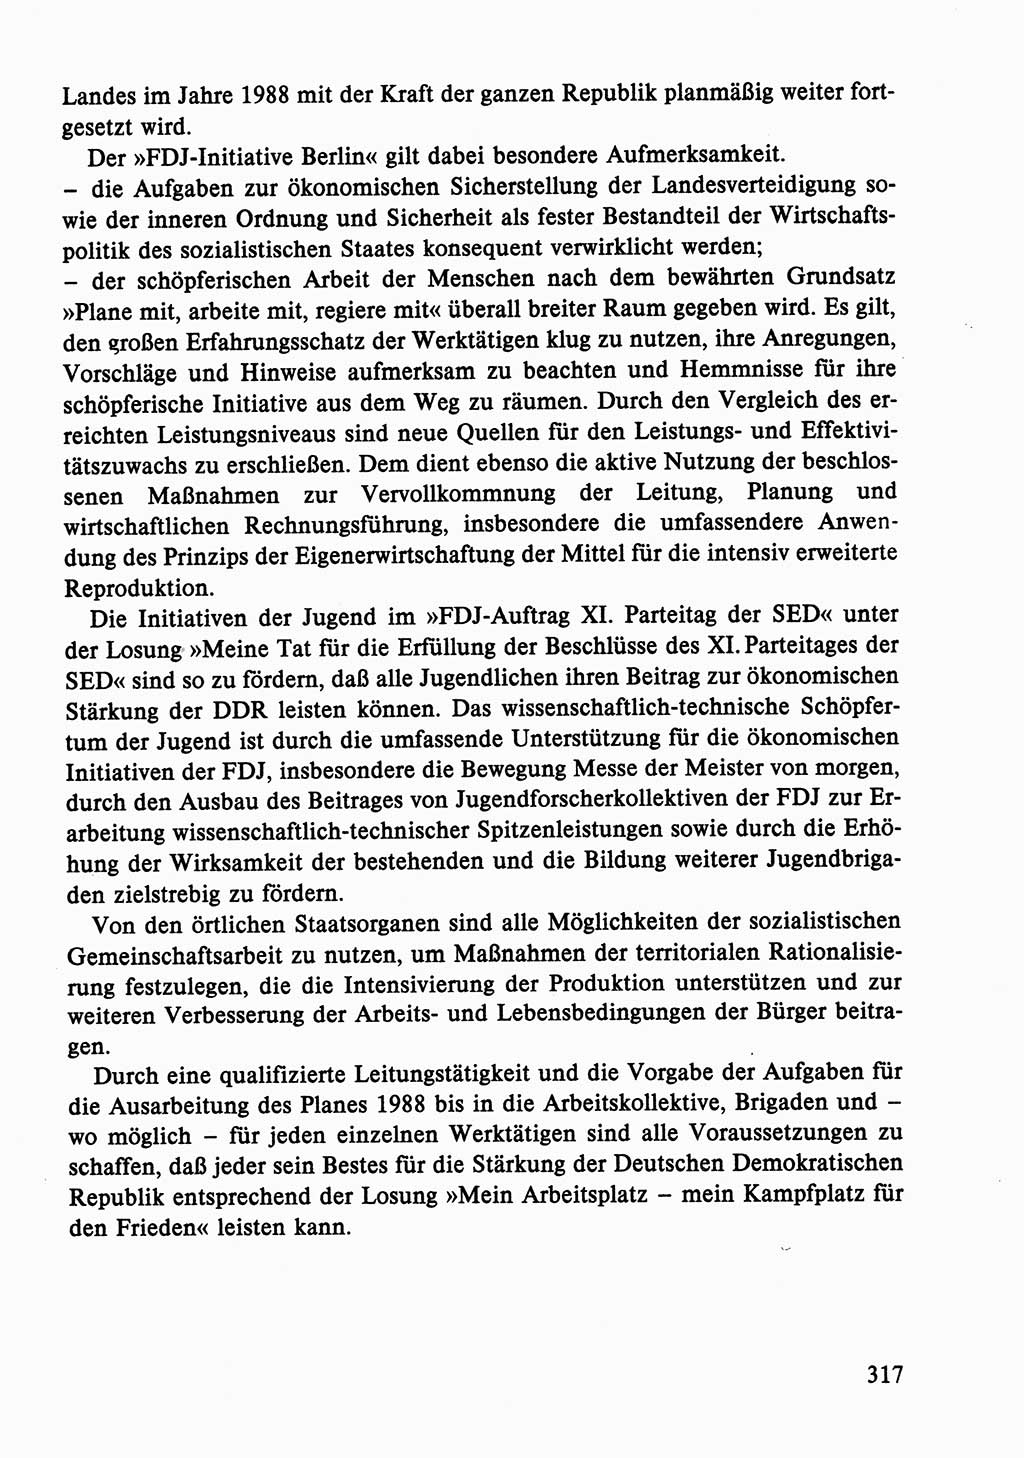 Dokumente der Sozialistischen Einheitspartei Deutschlands (SED) [Deutsche Demokratische Republik (DDR)] 1986-1987, Seite 317 (Dok. SED DDR 1986-1987, S. 317)